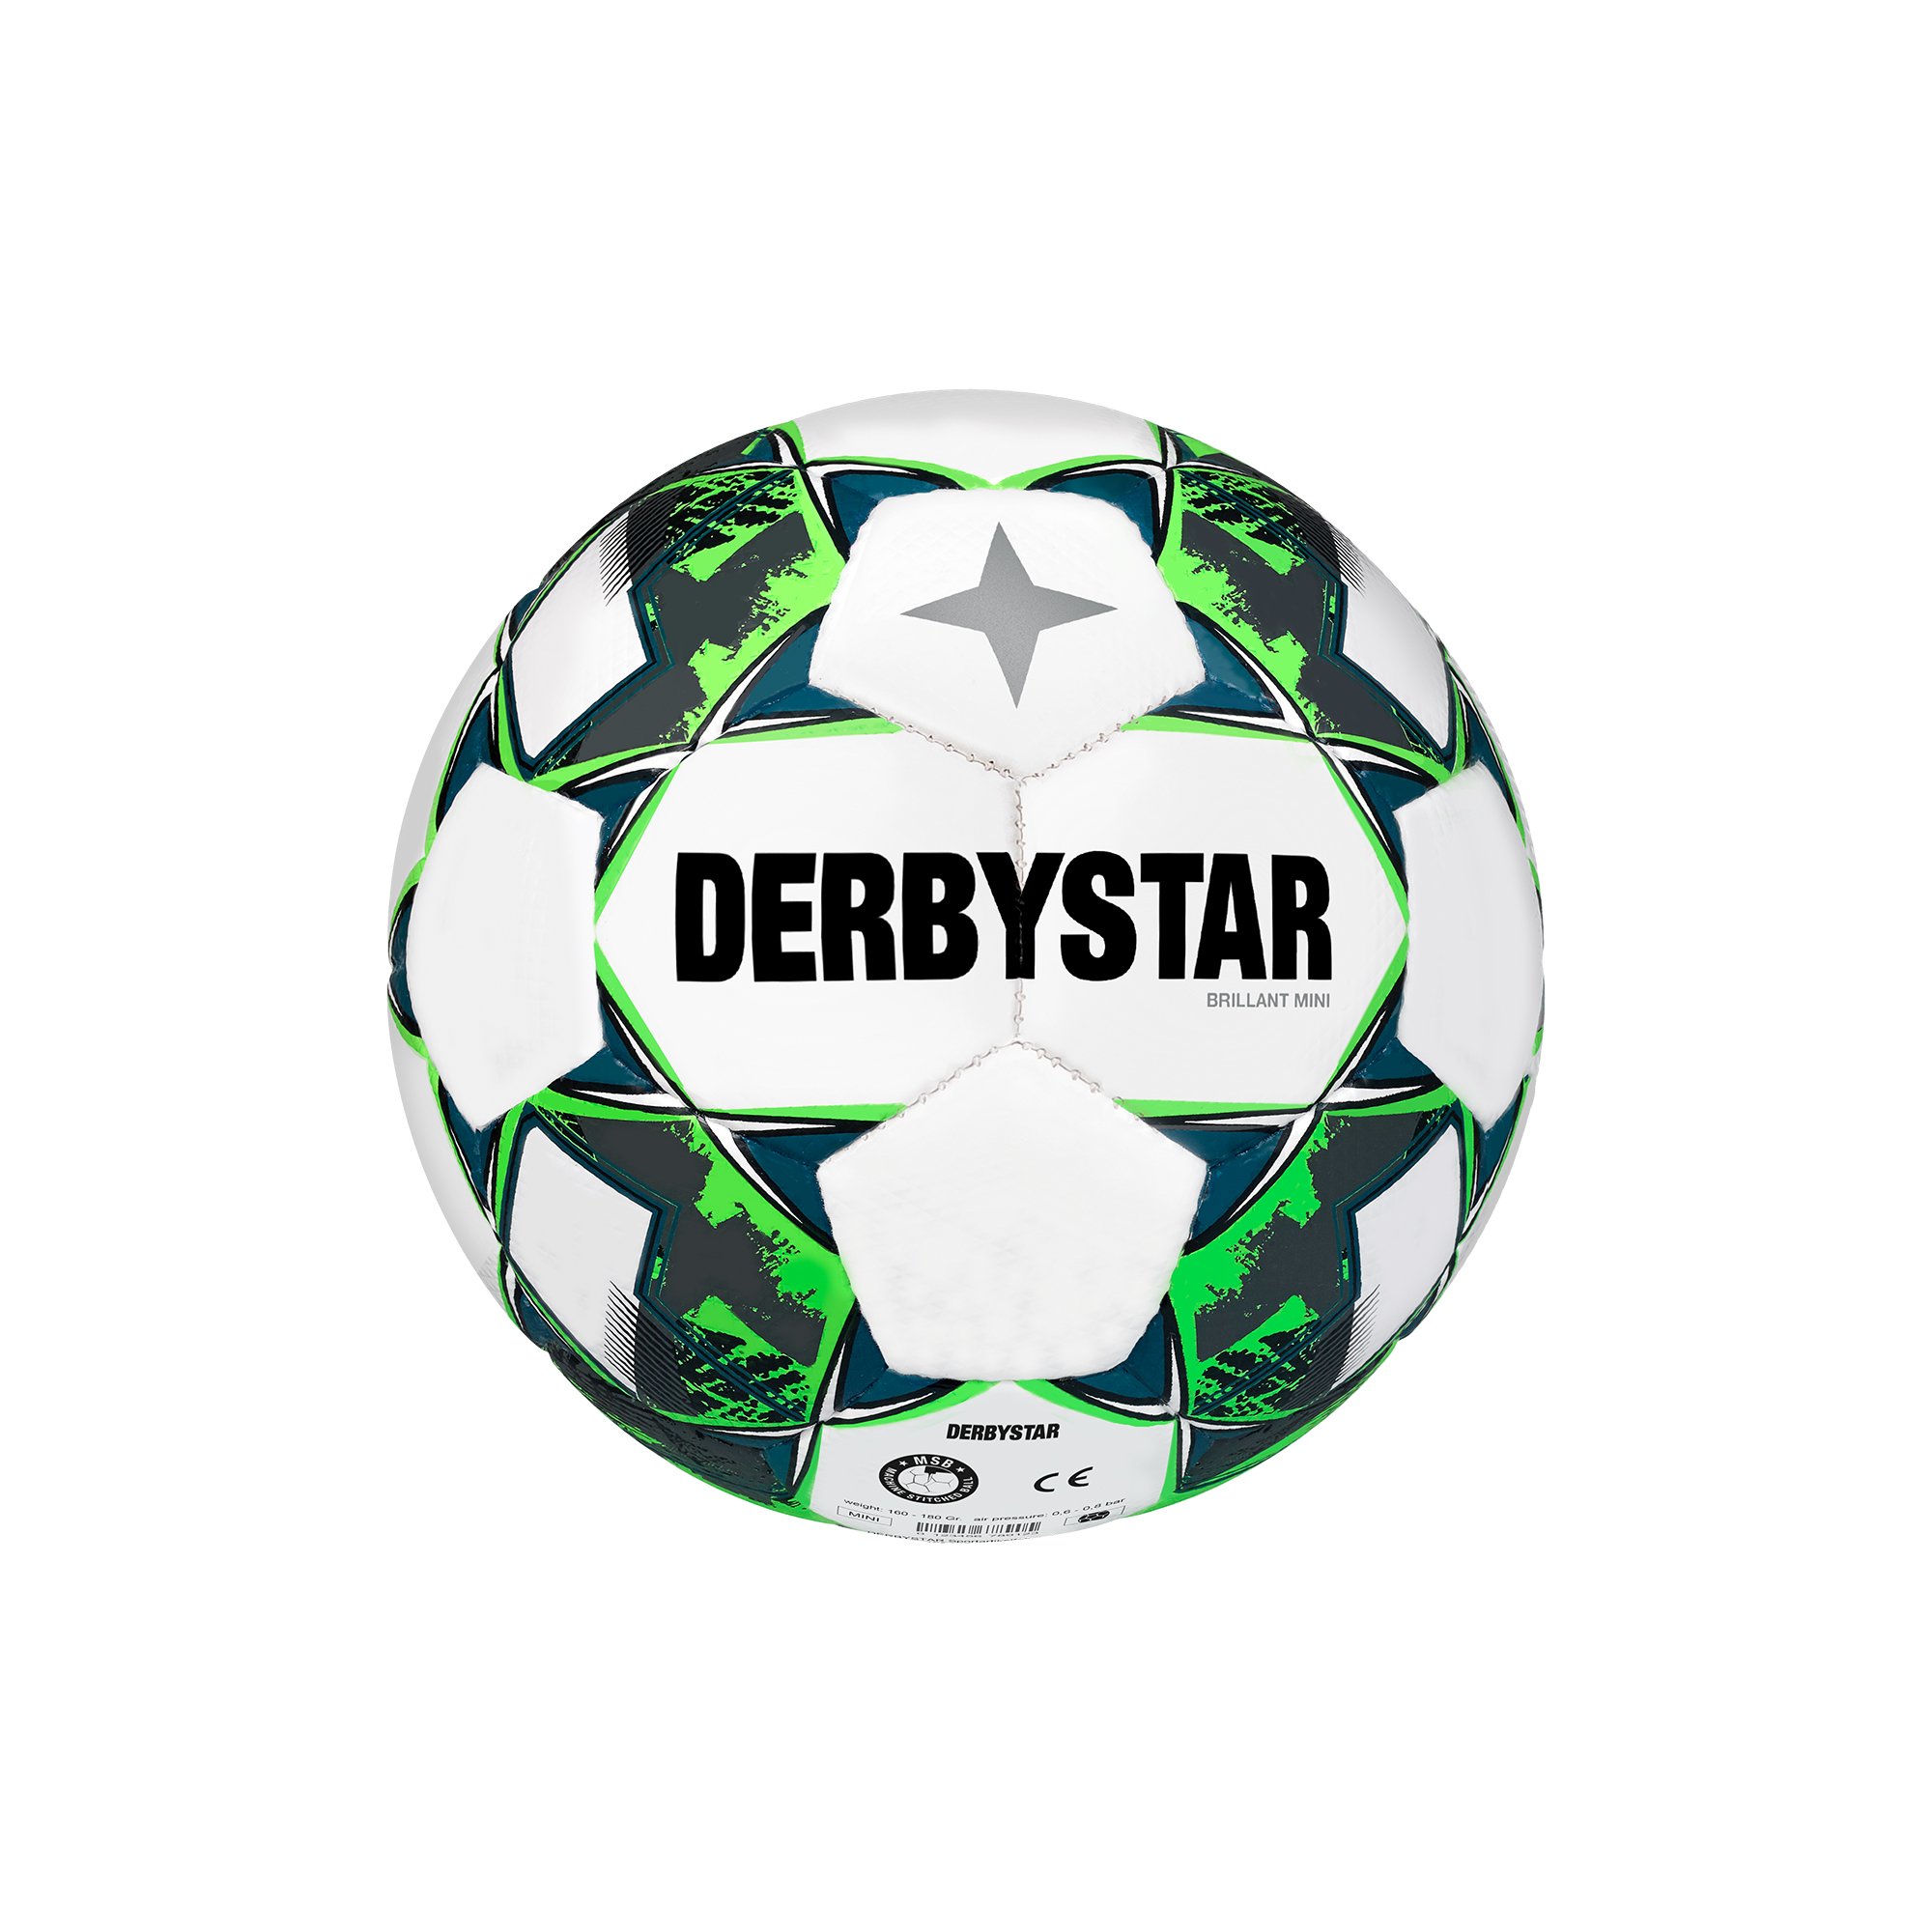 Derbystar Miniball v23